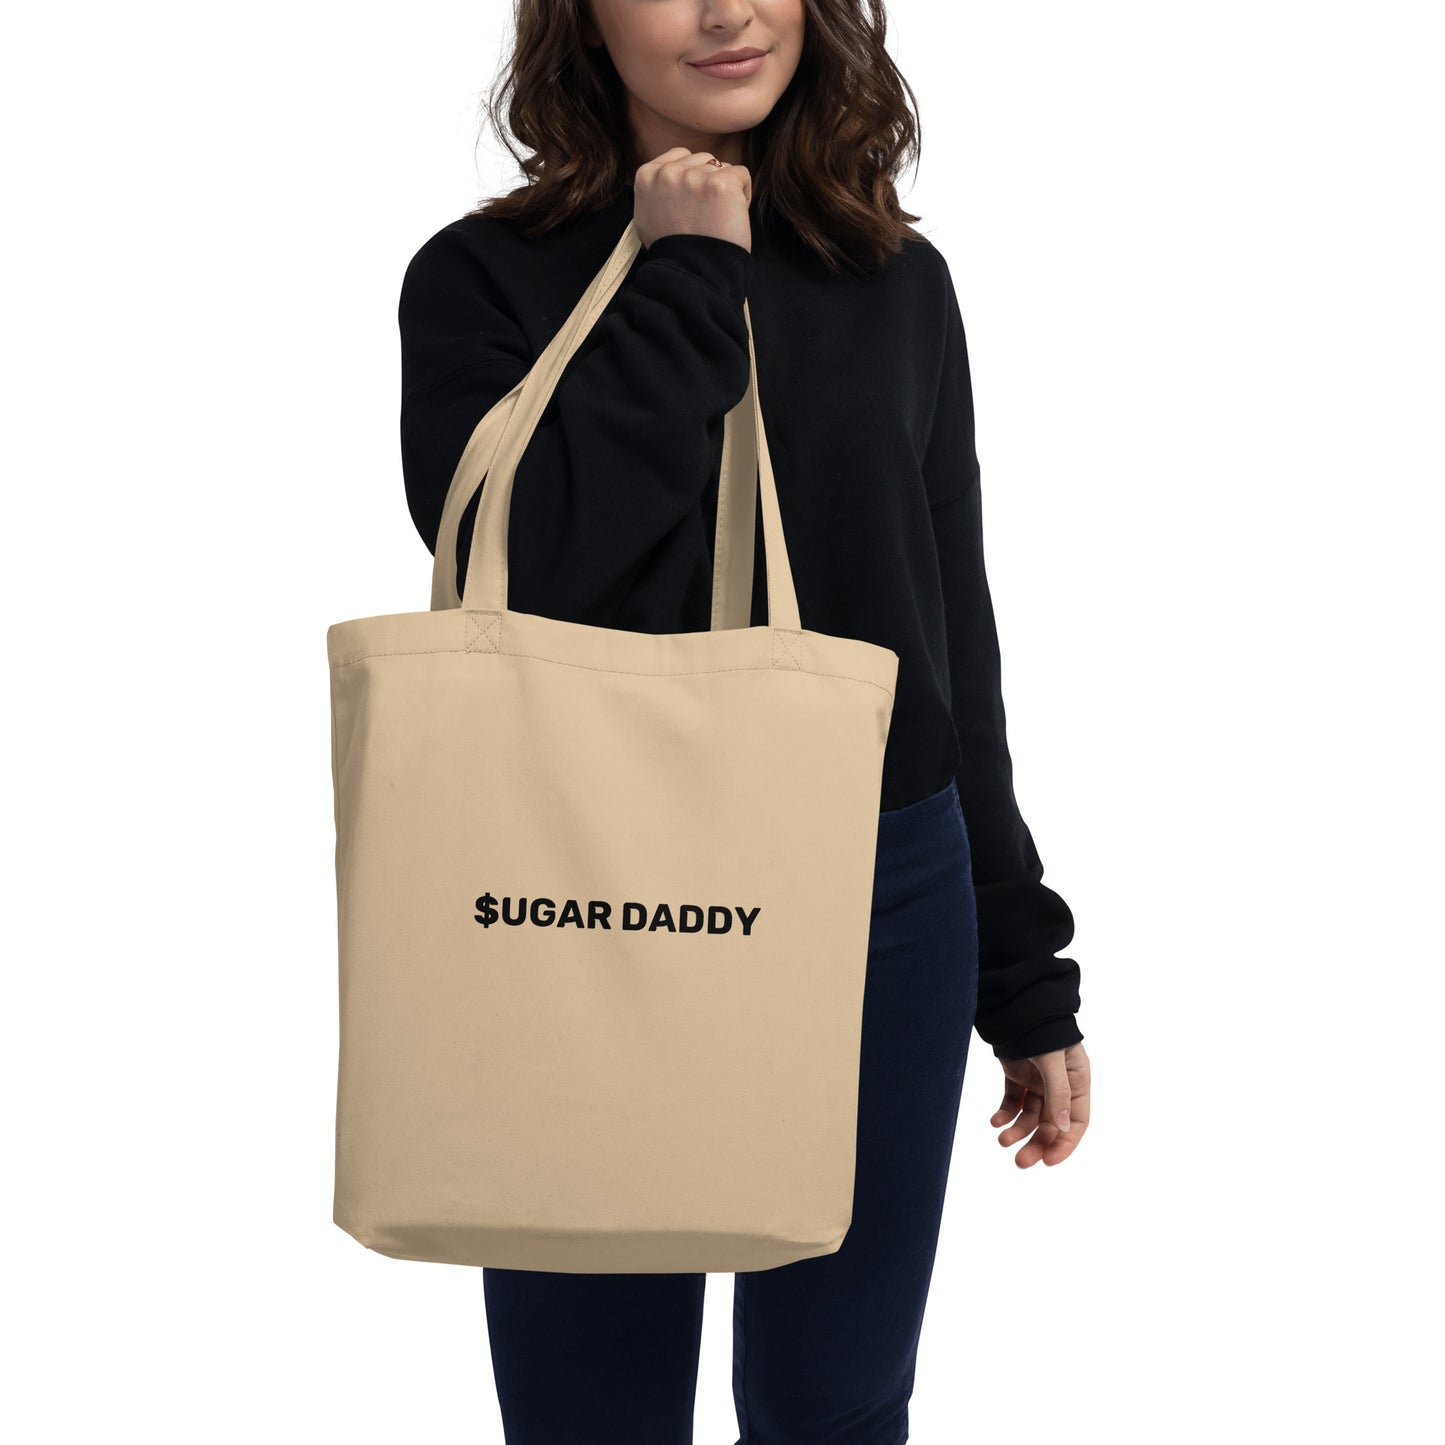 Tote bag bio Sugar daddy - Sedurro